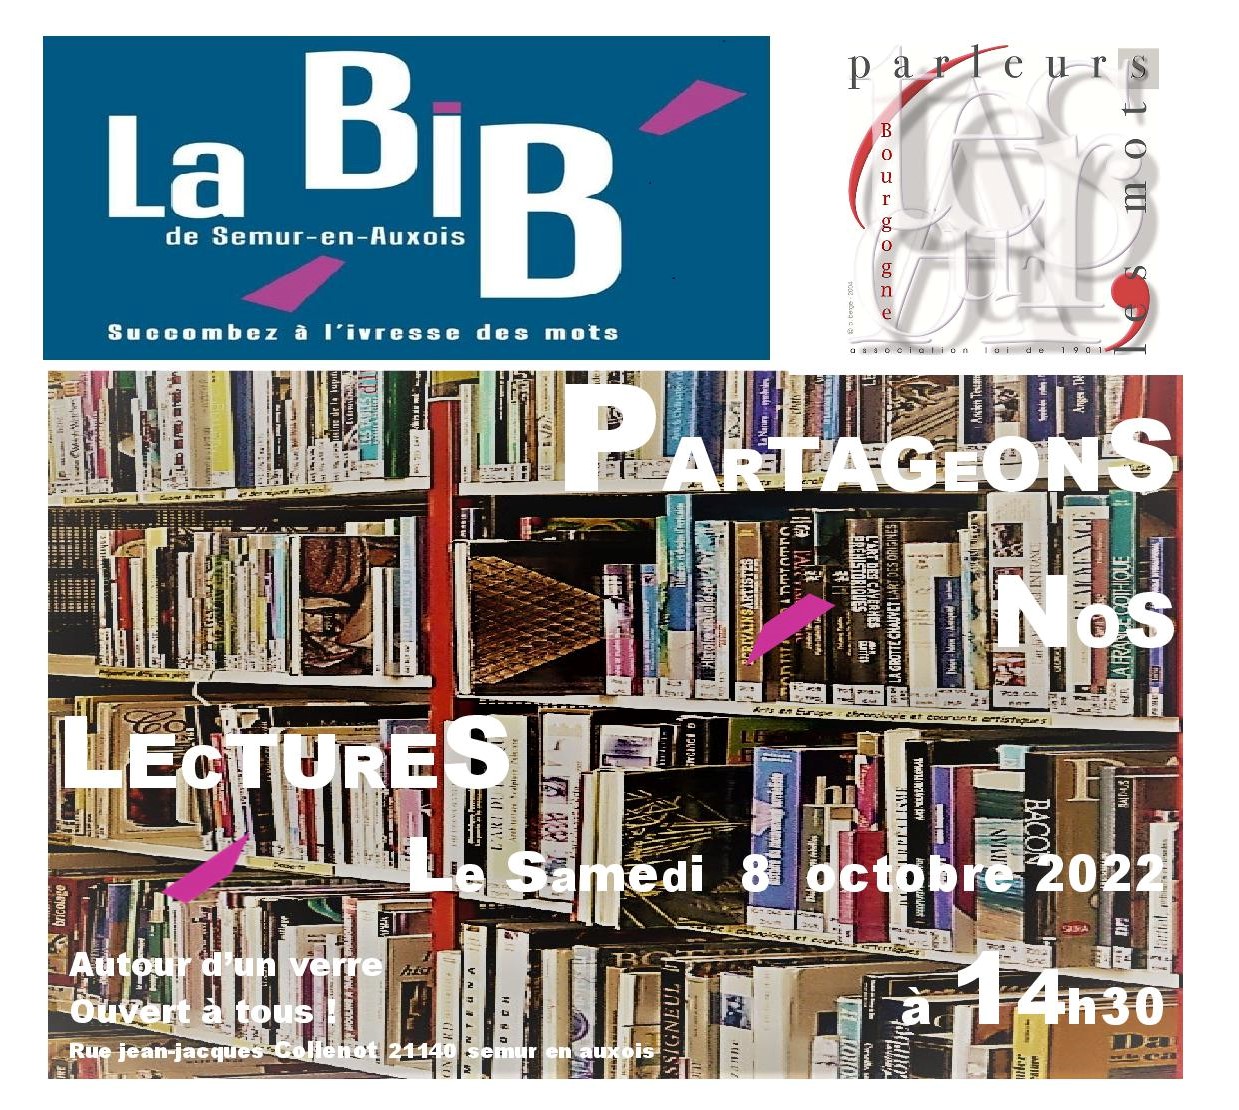 Partageons nos lectures Bibliothèque 8 octobre 2022